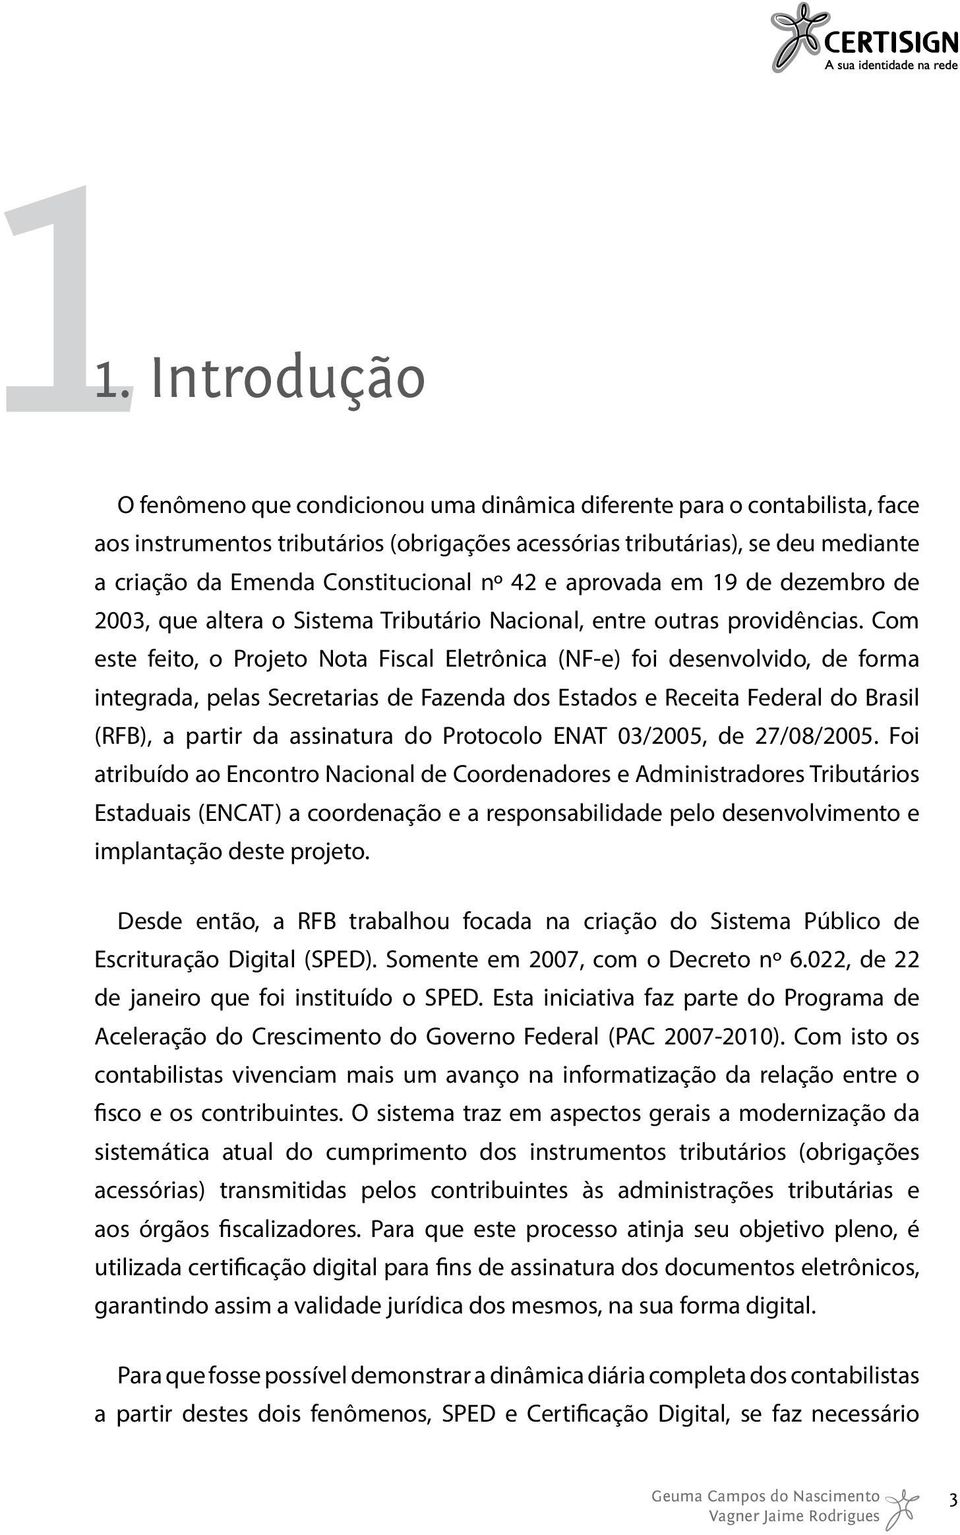 Com este feito, o Projeto Nota Fiscal Eletrônica (NF-e) foi desenvolvido, de forma integrada, pelas Secretarias de Fazenda dos Estados e Receita Federal do Brasil (RFB), a partir da assinatura do